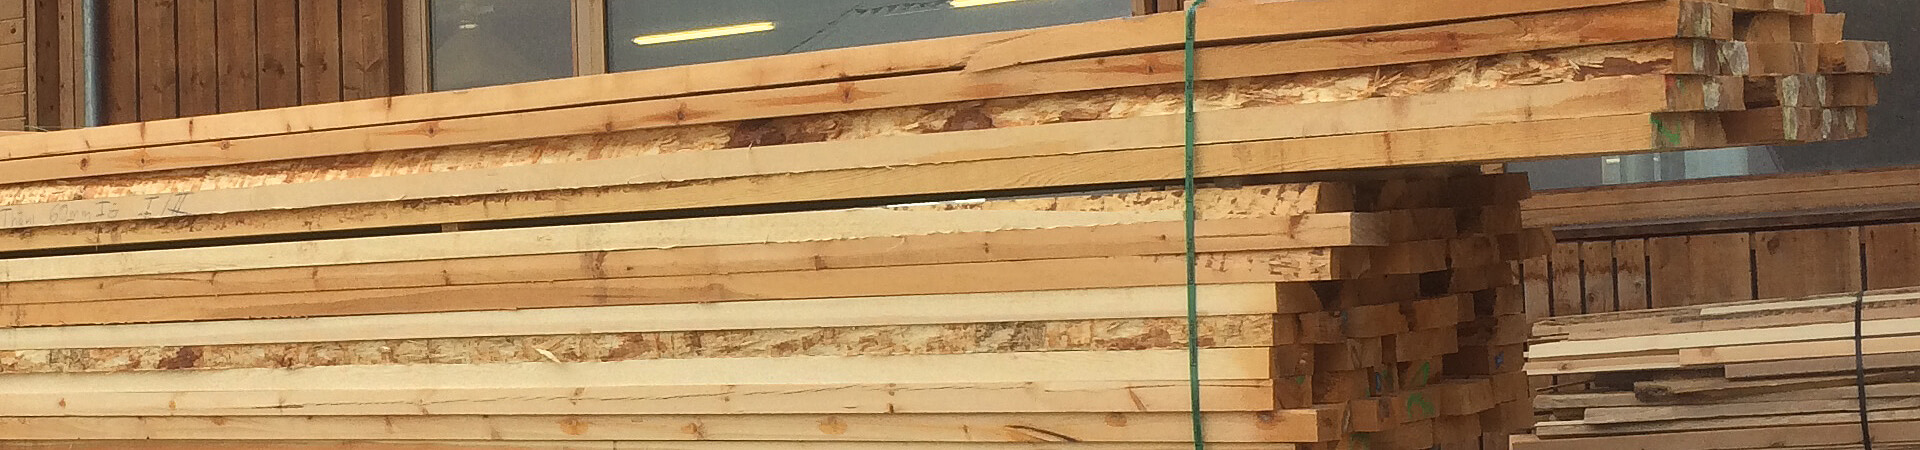 Holz für Schreiner und Fensterbauer vom Bergholzzentrum Florinett in Bergün